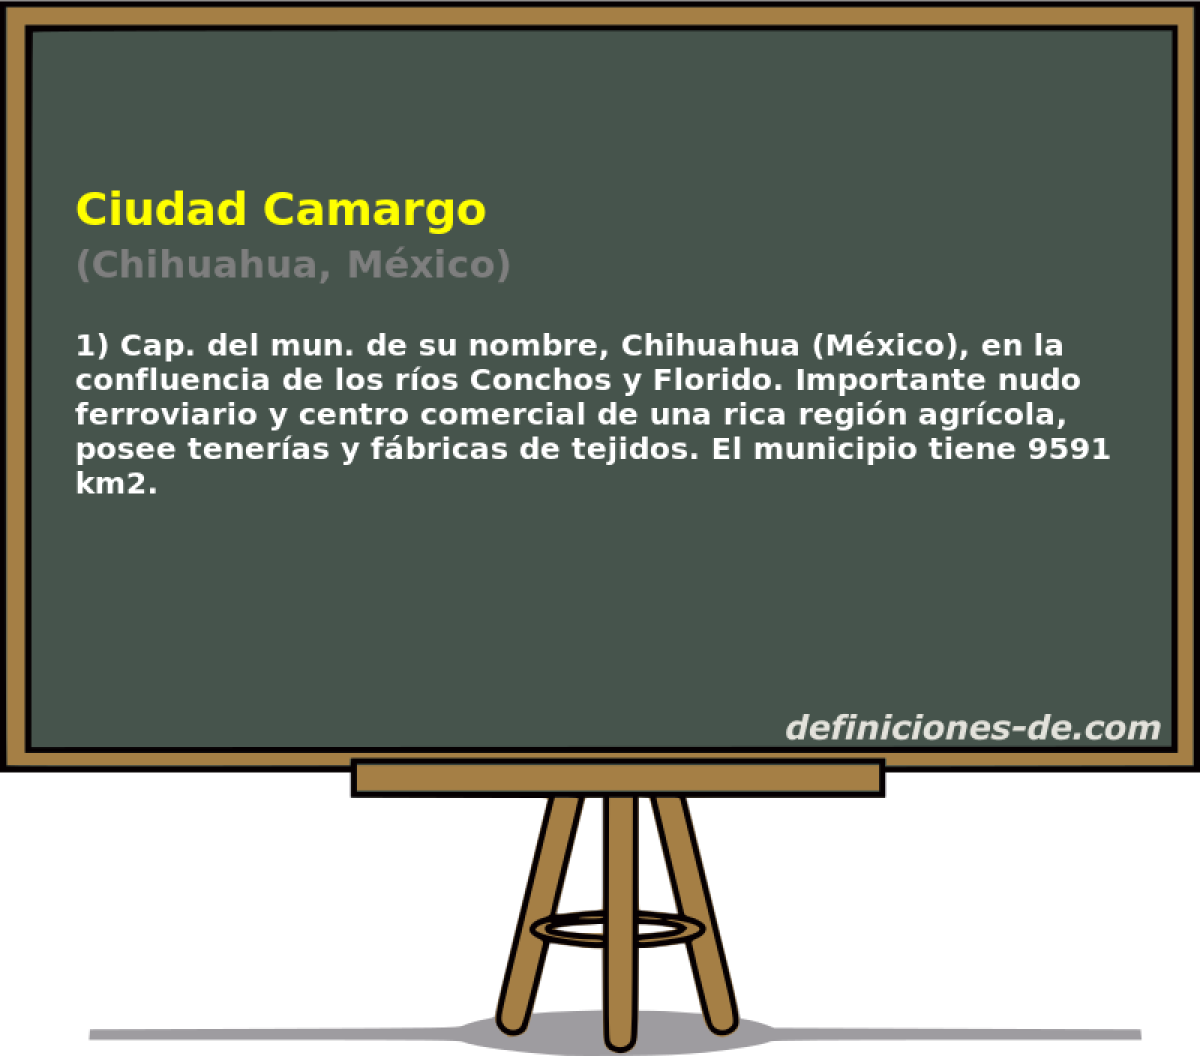 Ciudad Camargo (Chihuahua, Mxico)